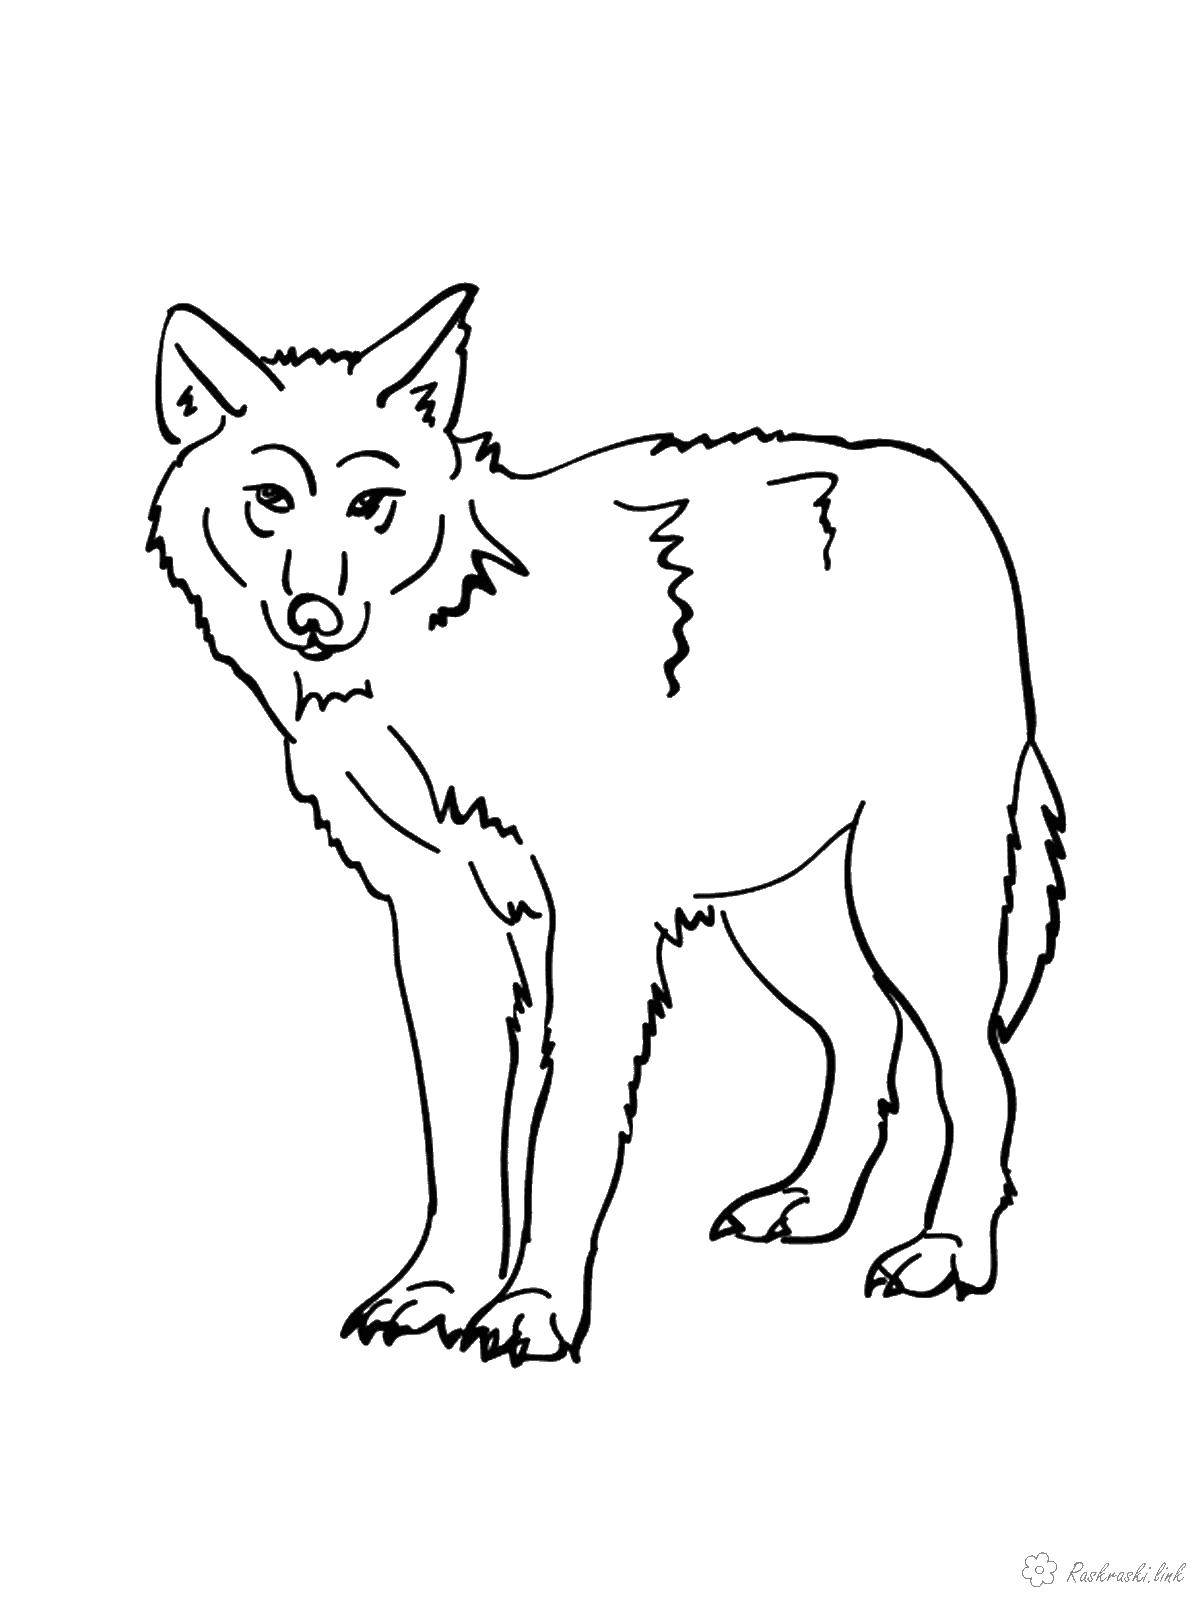 Раскраска Волк - бесплатные распечатки для детей (дети, Волк, животные, распечатки)